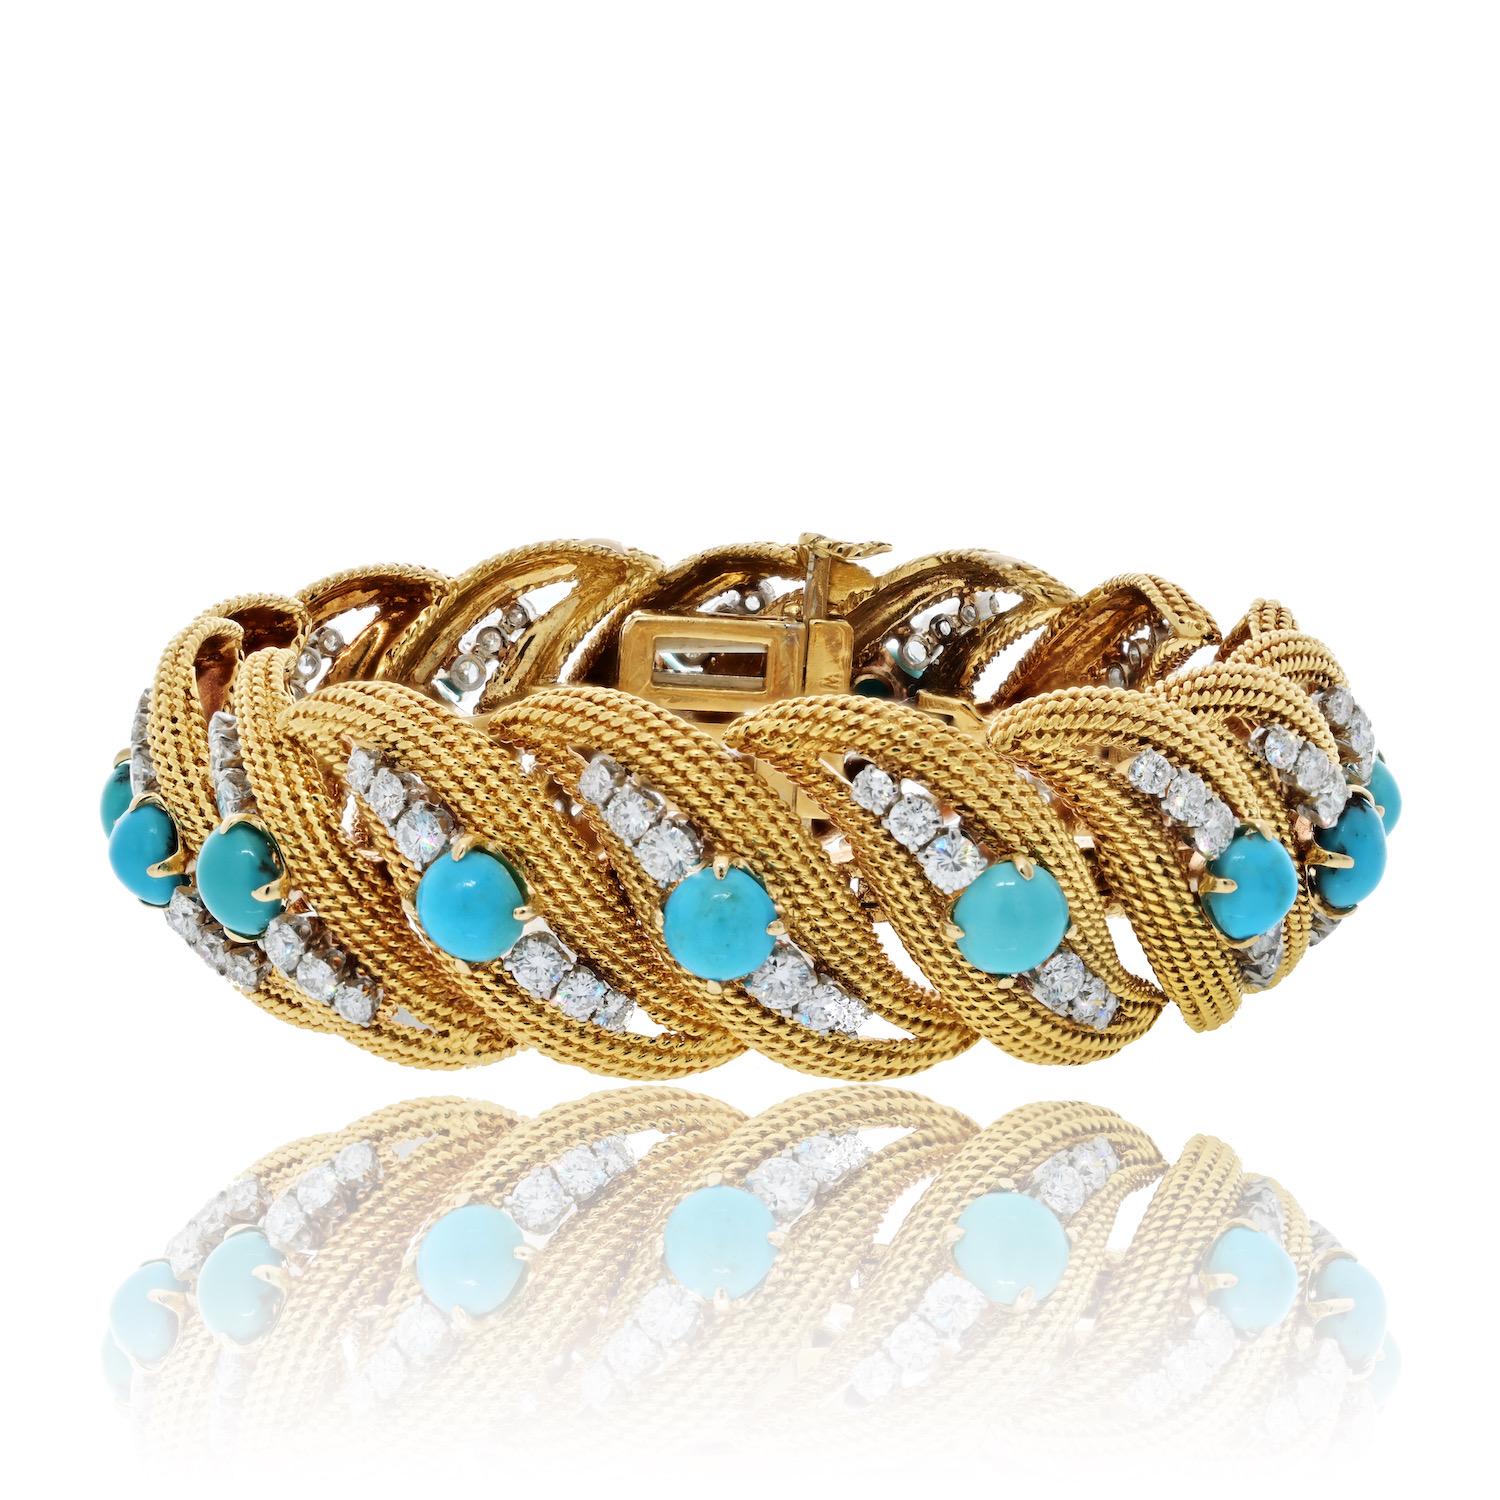 Bracelet vintage de David Webb en or jaune 18 carats serti de turquoises et de diamants. 

Fabriqué dans les années 1980, ce bracelet dégage une allure intemporelle grâce à son mélange unique de matériaux et à ses détails complexes.

Le bracelet